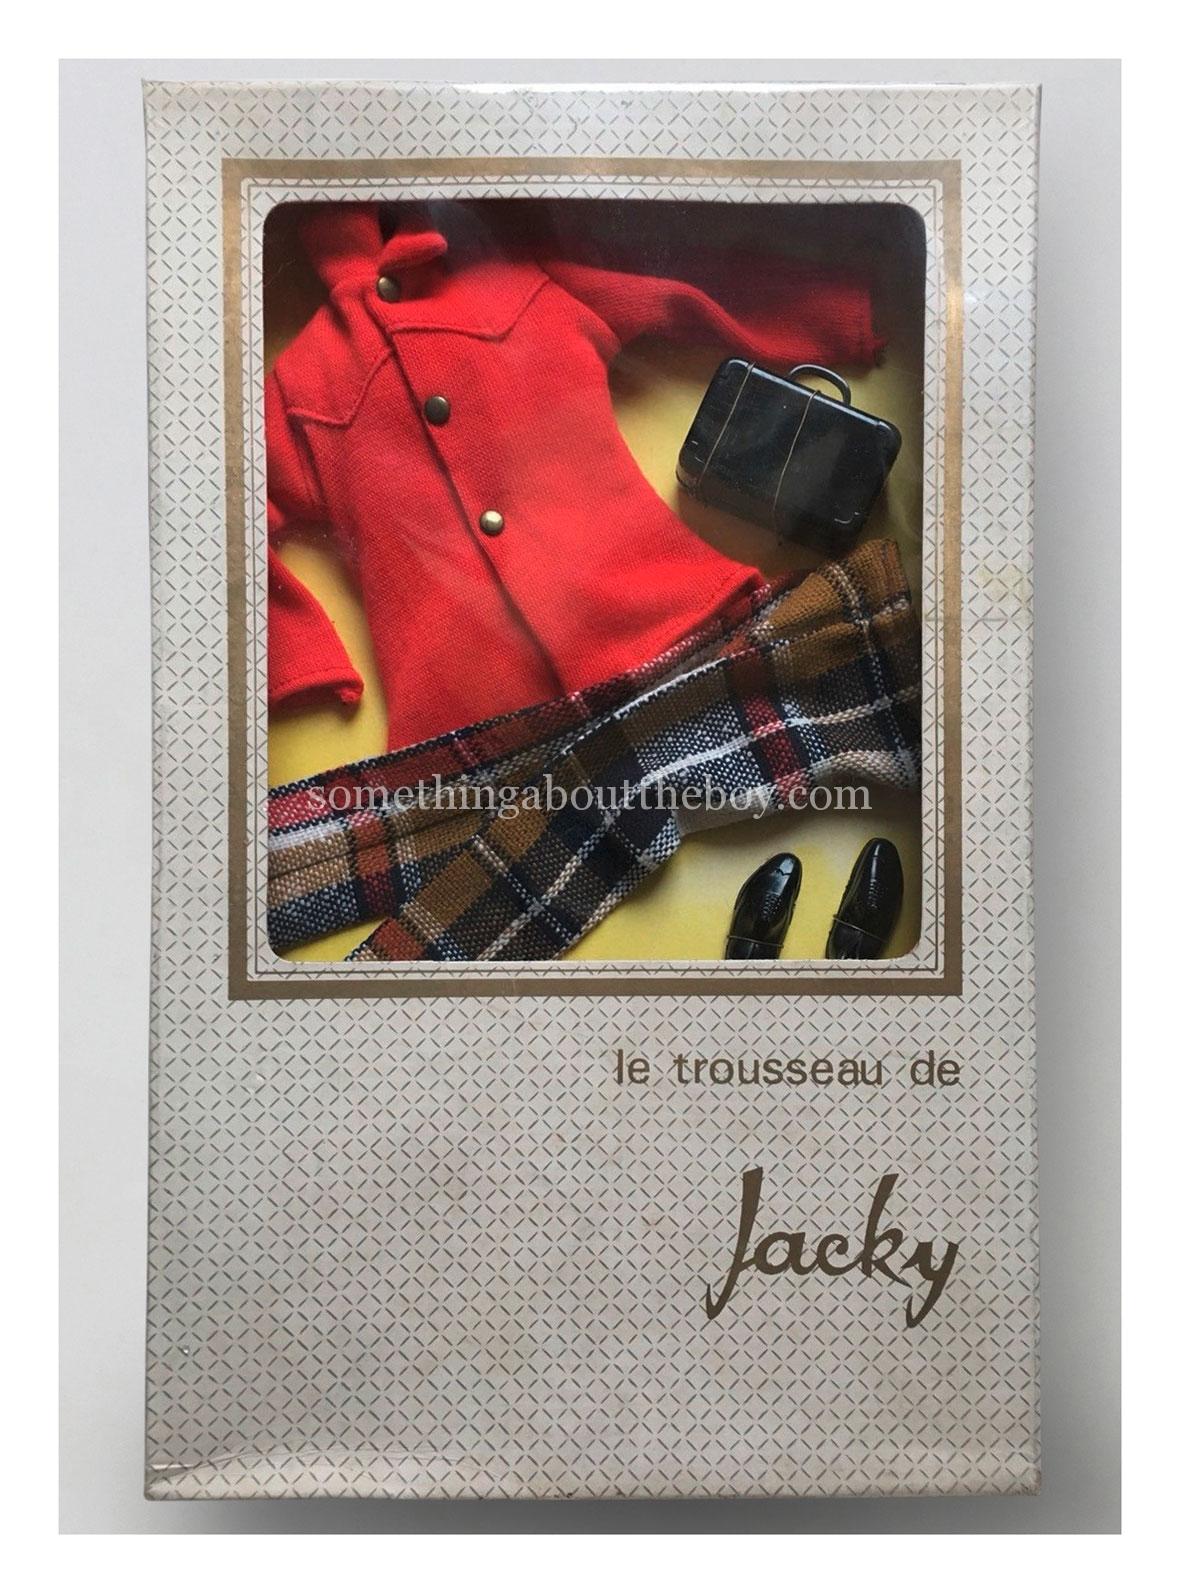 Jacky outfit by GéGé